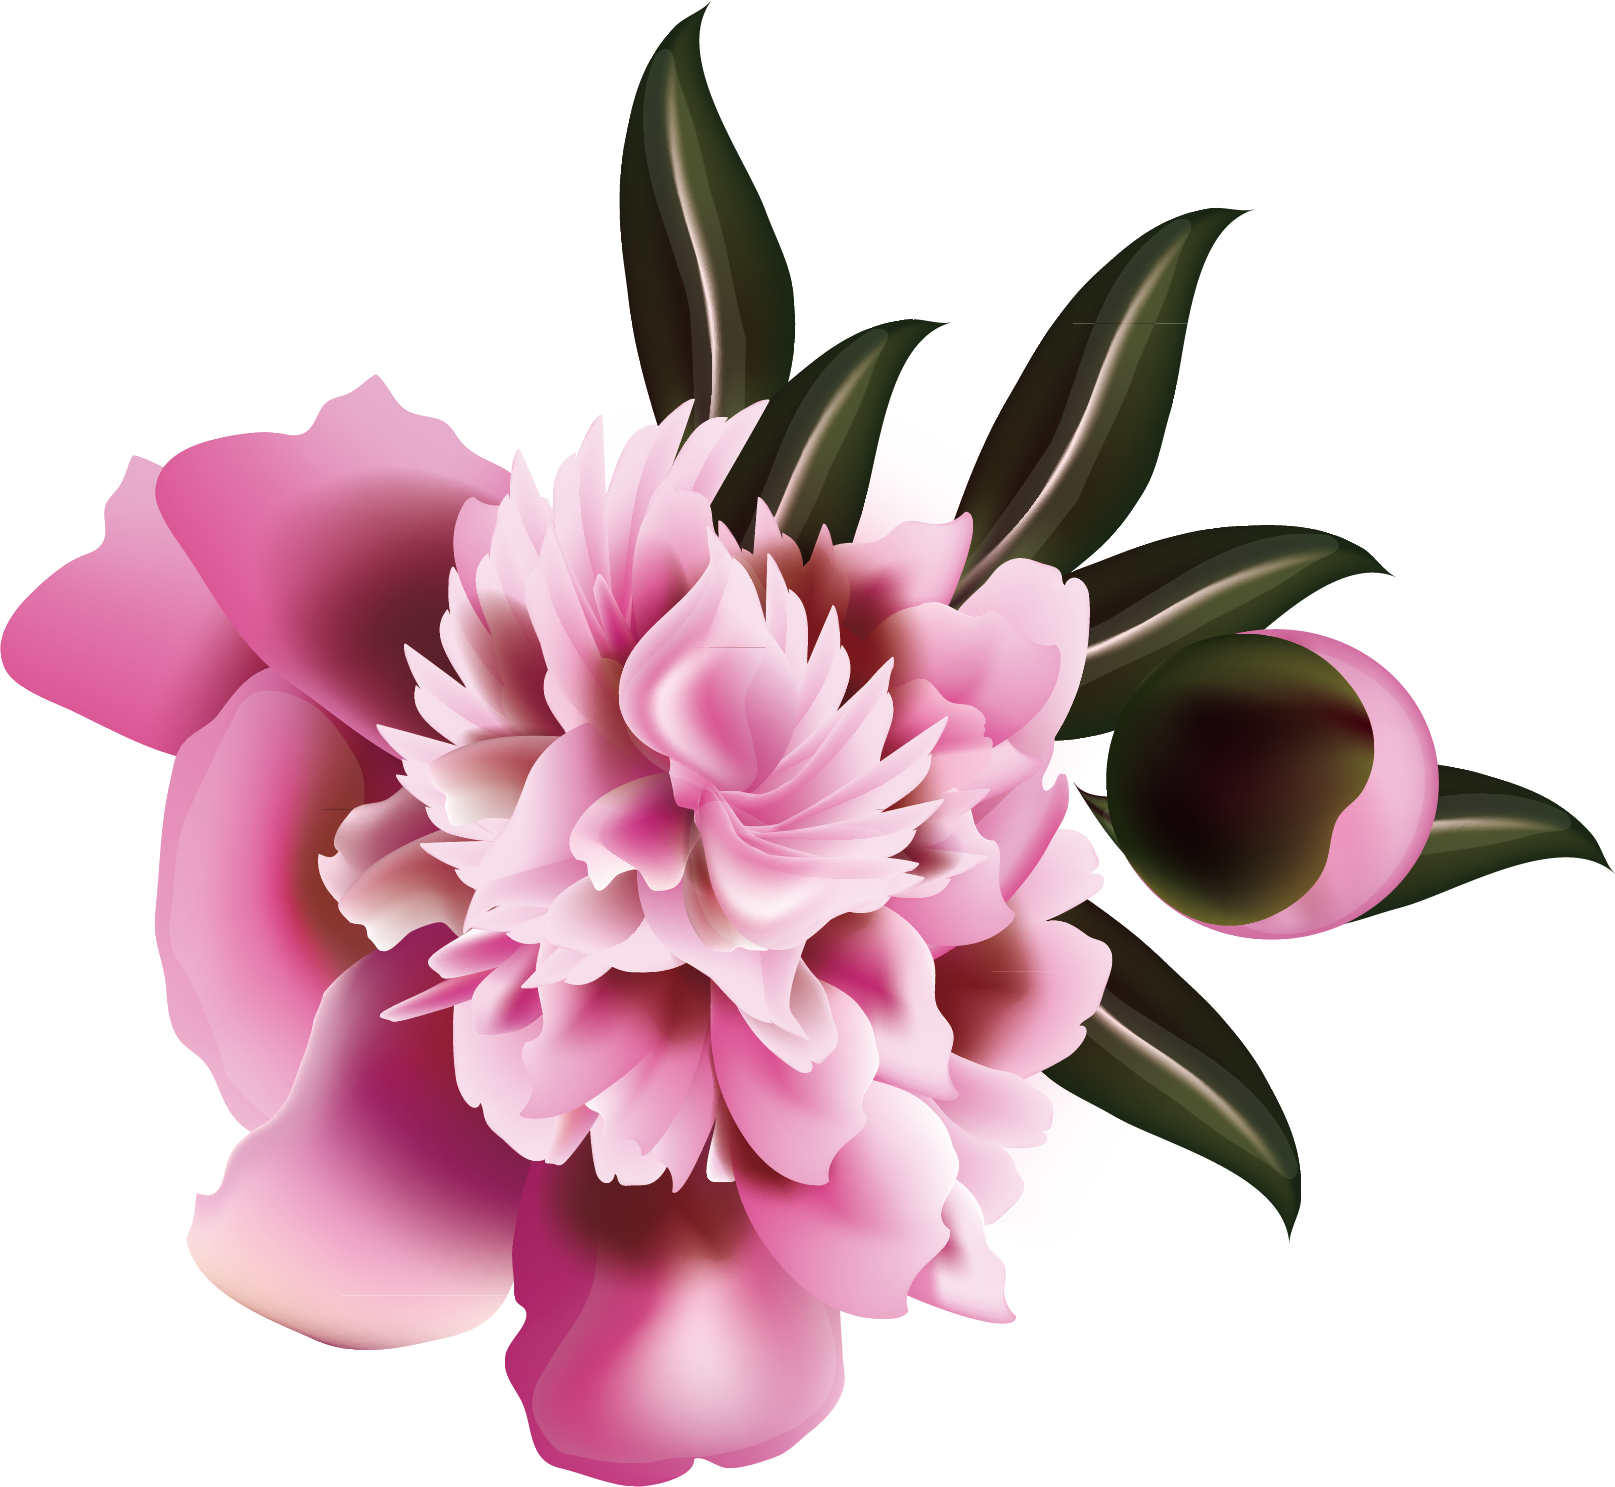 Floral Design Flower Illustration - Flower (1615x1487)